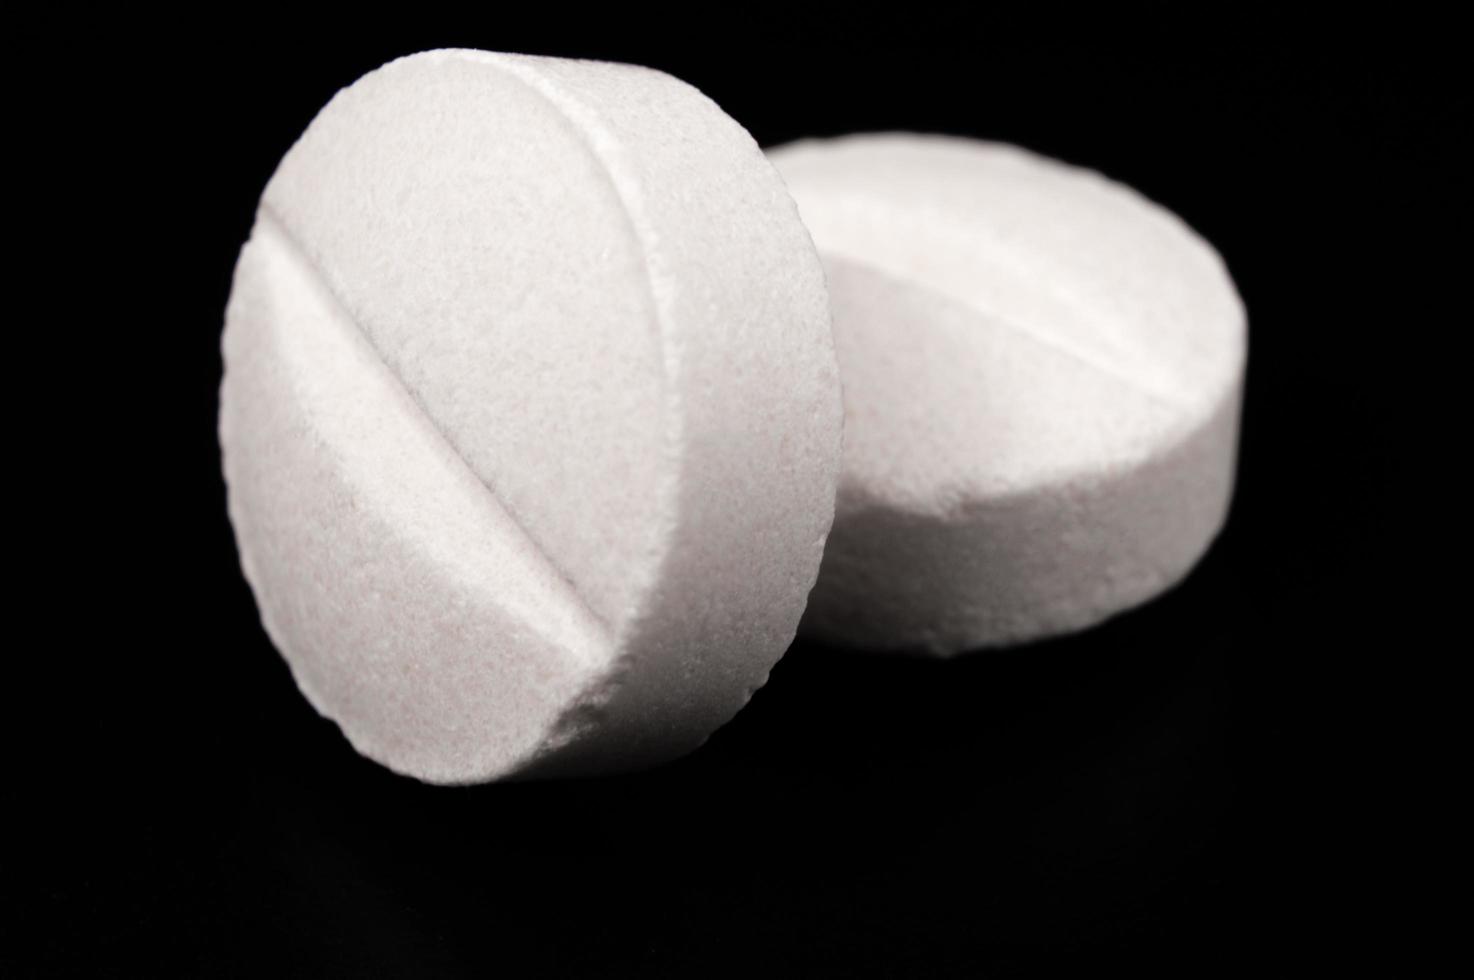 pílulas médicas brancas e comprimidos com garrafa foto